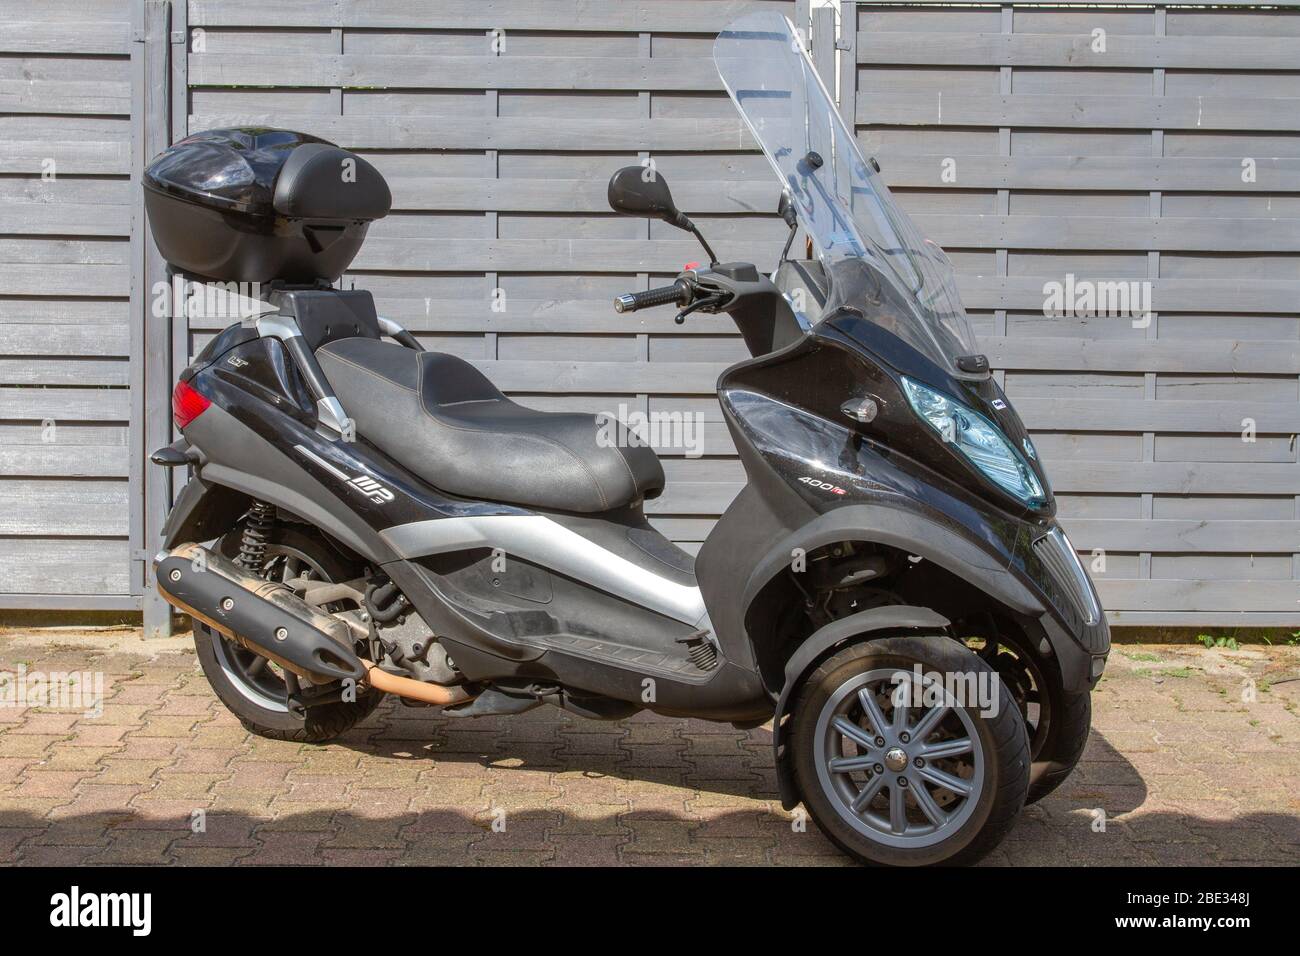 Bordeaux , Aquitaine / Frankreich - 03 30 2020 : Piaggio MP3 400 Motorrad  drei Räder Roller in der Stadt Straße geparkt Stockfotografie - Alamy